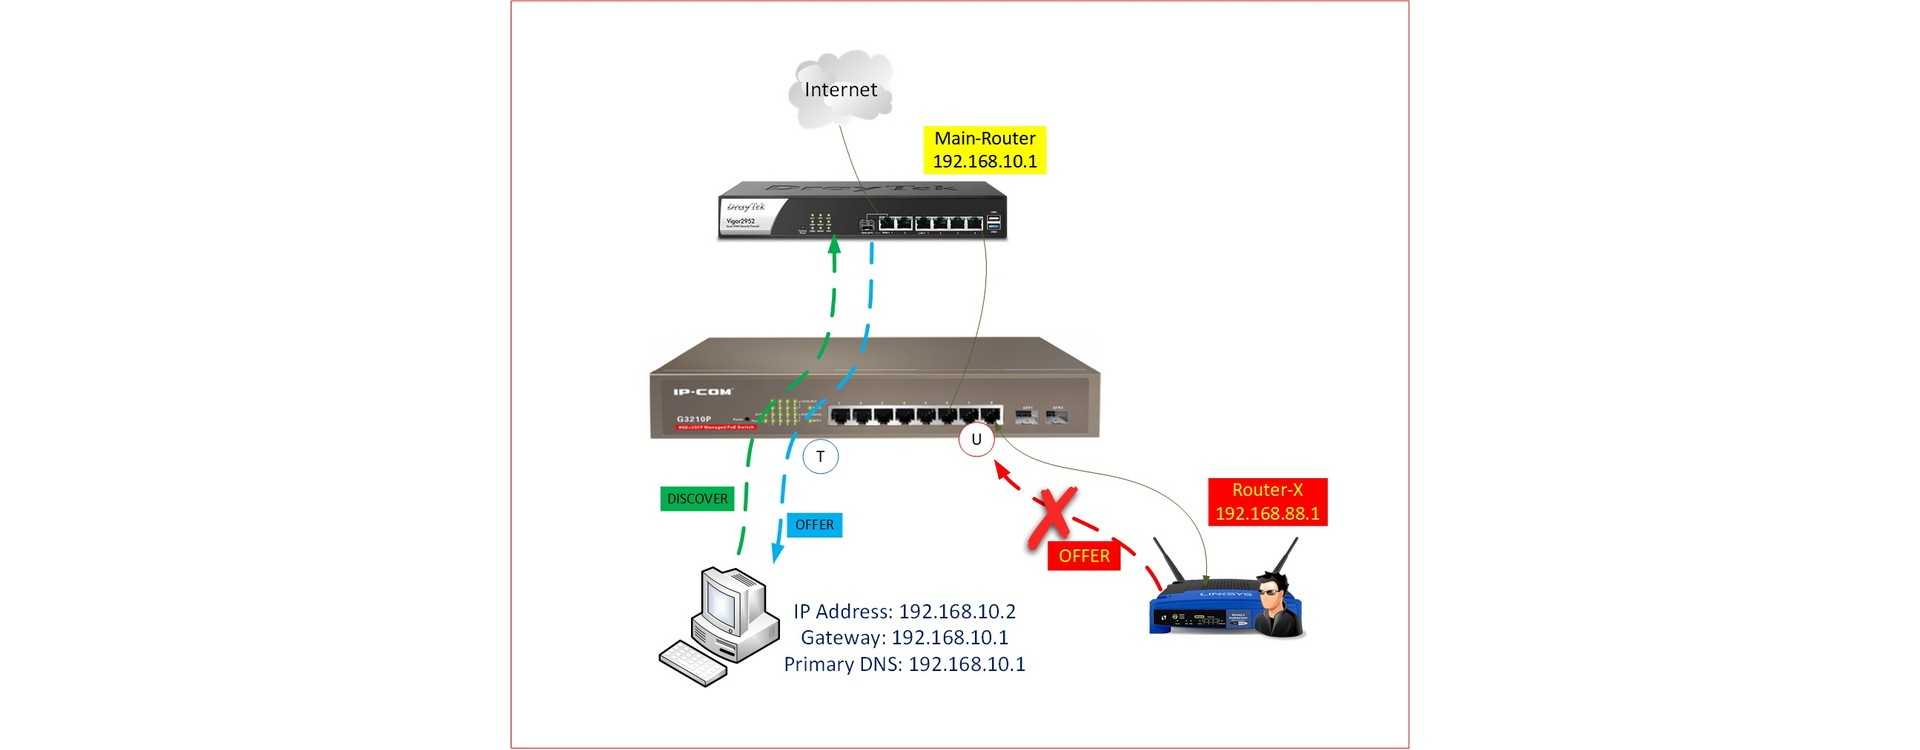 การใช้ DHCP Snooping เพื่อป้องกัน DHCP Server จาก Router ที่ไม่เกี่ยวข้อง